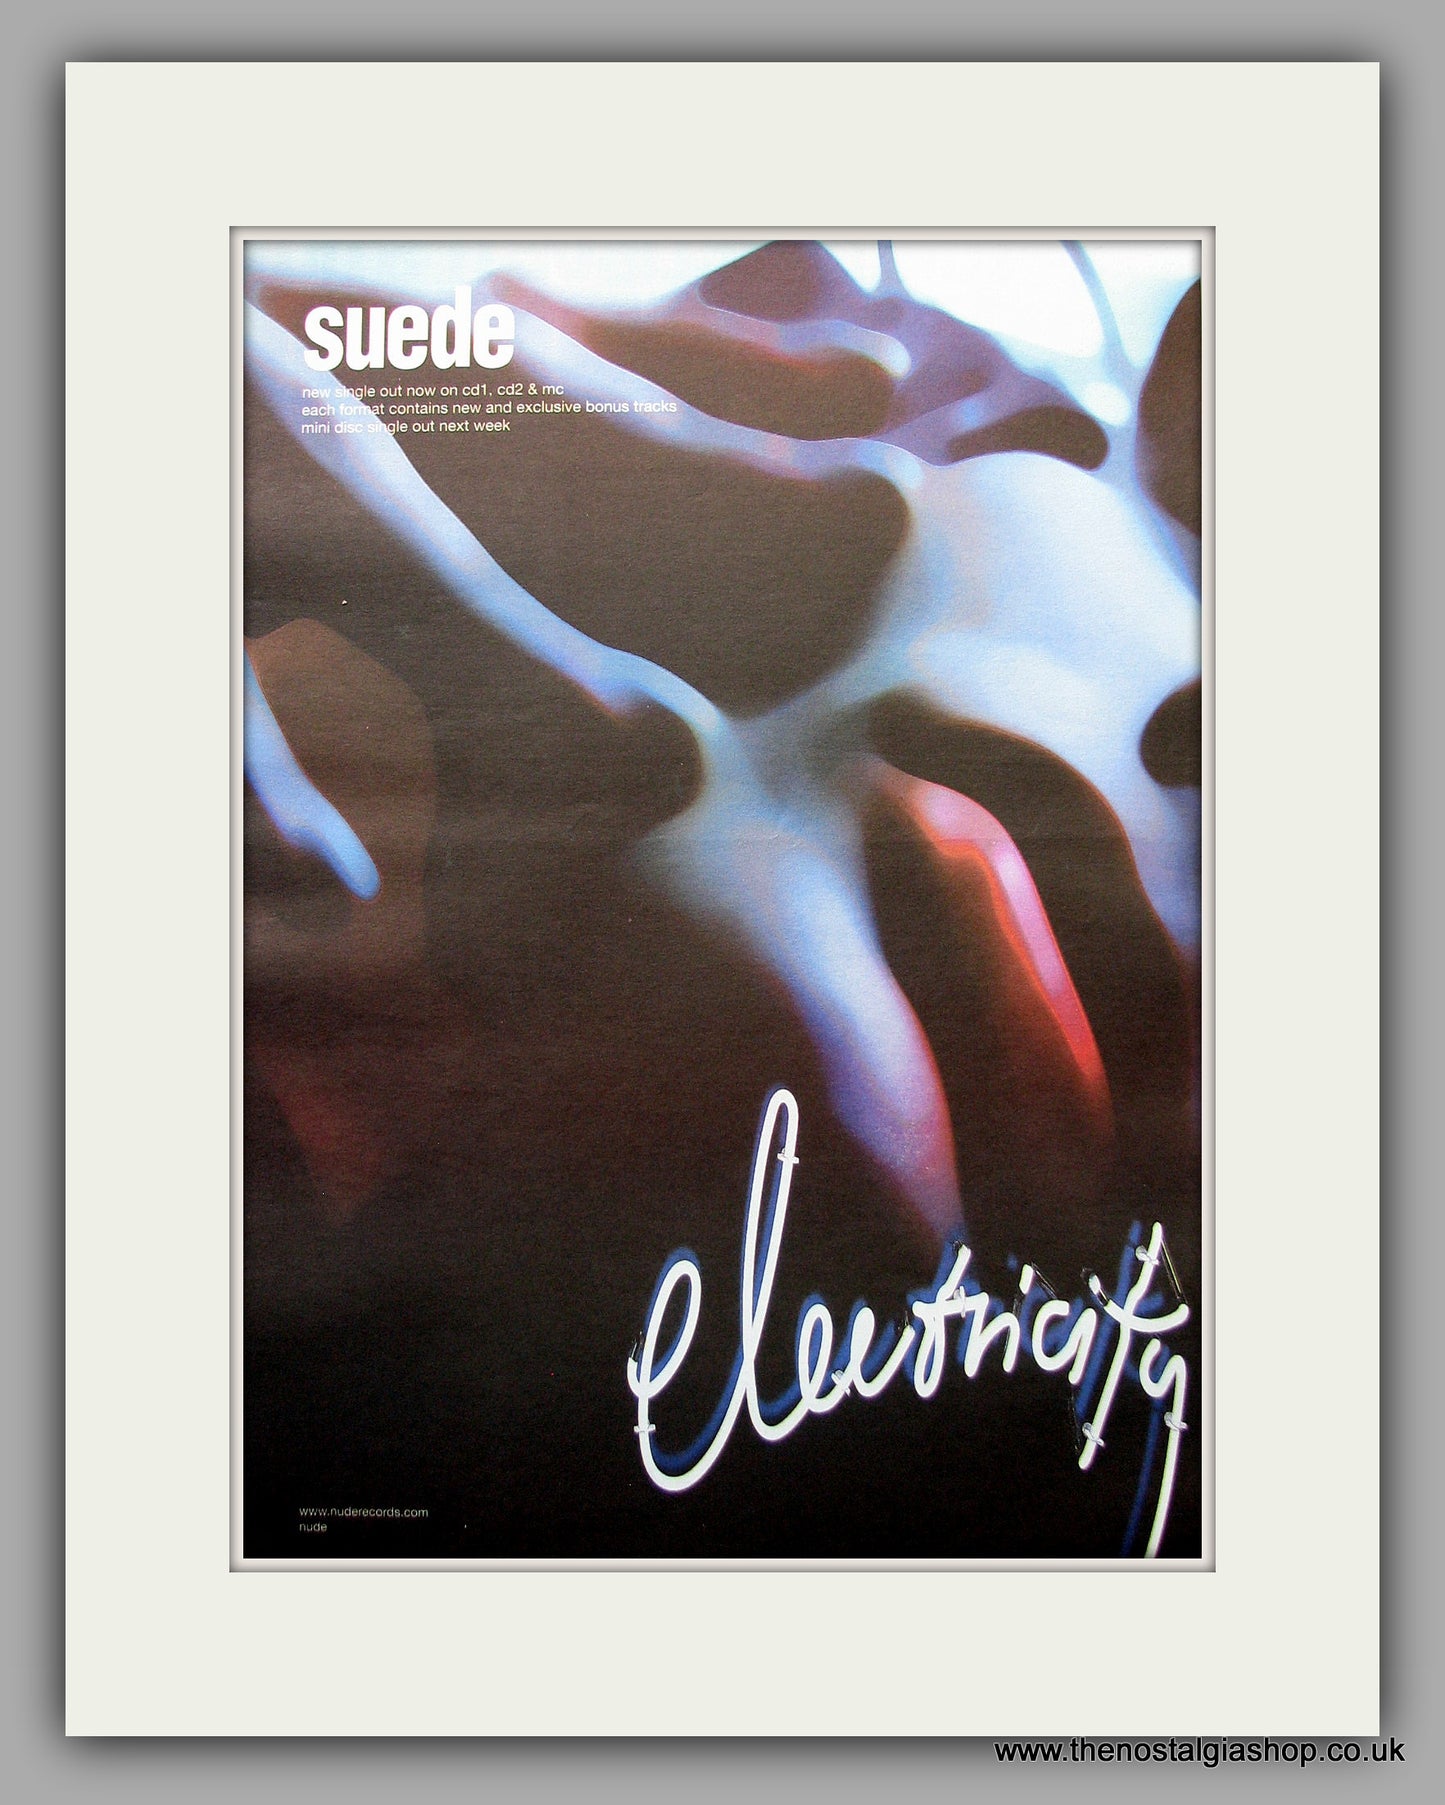 Suede - Electricity. Original Vintage Advert 1999 (ref AD11063)